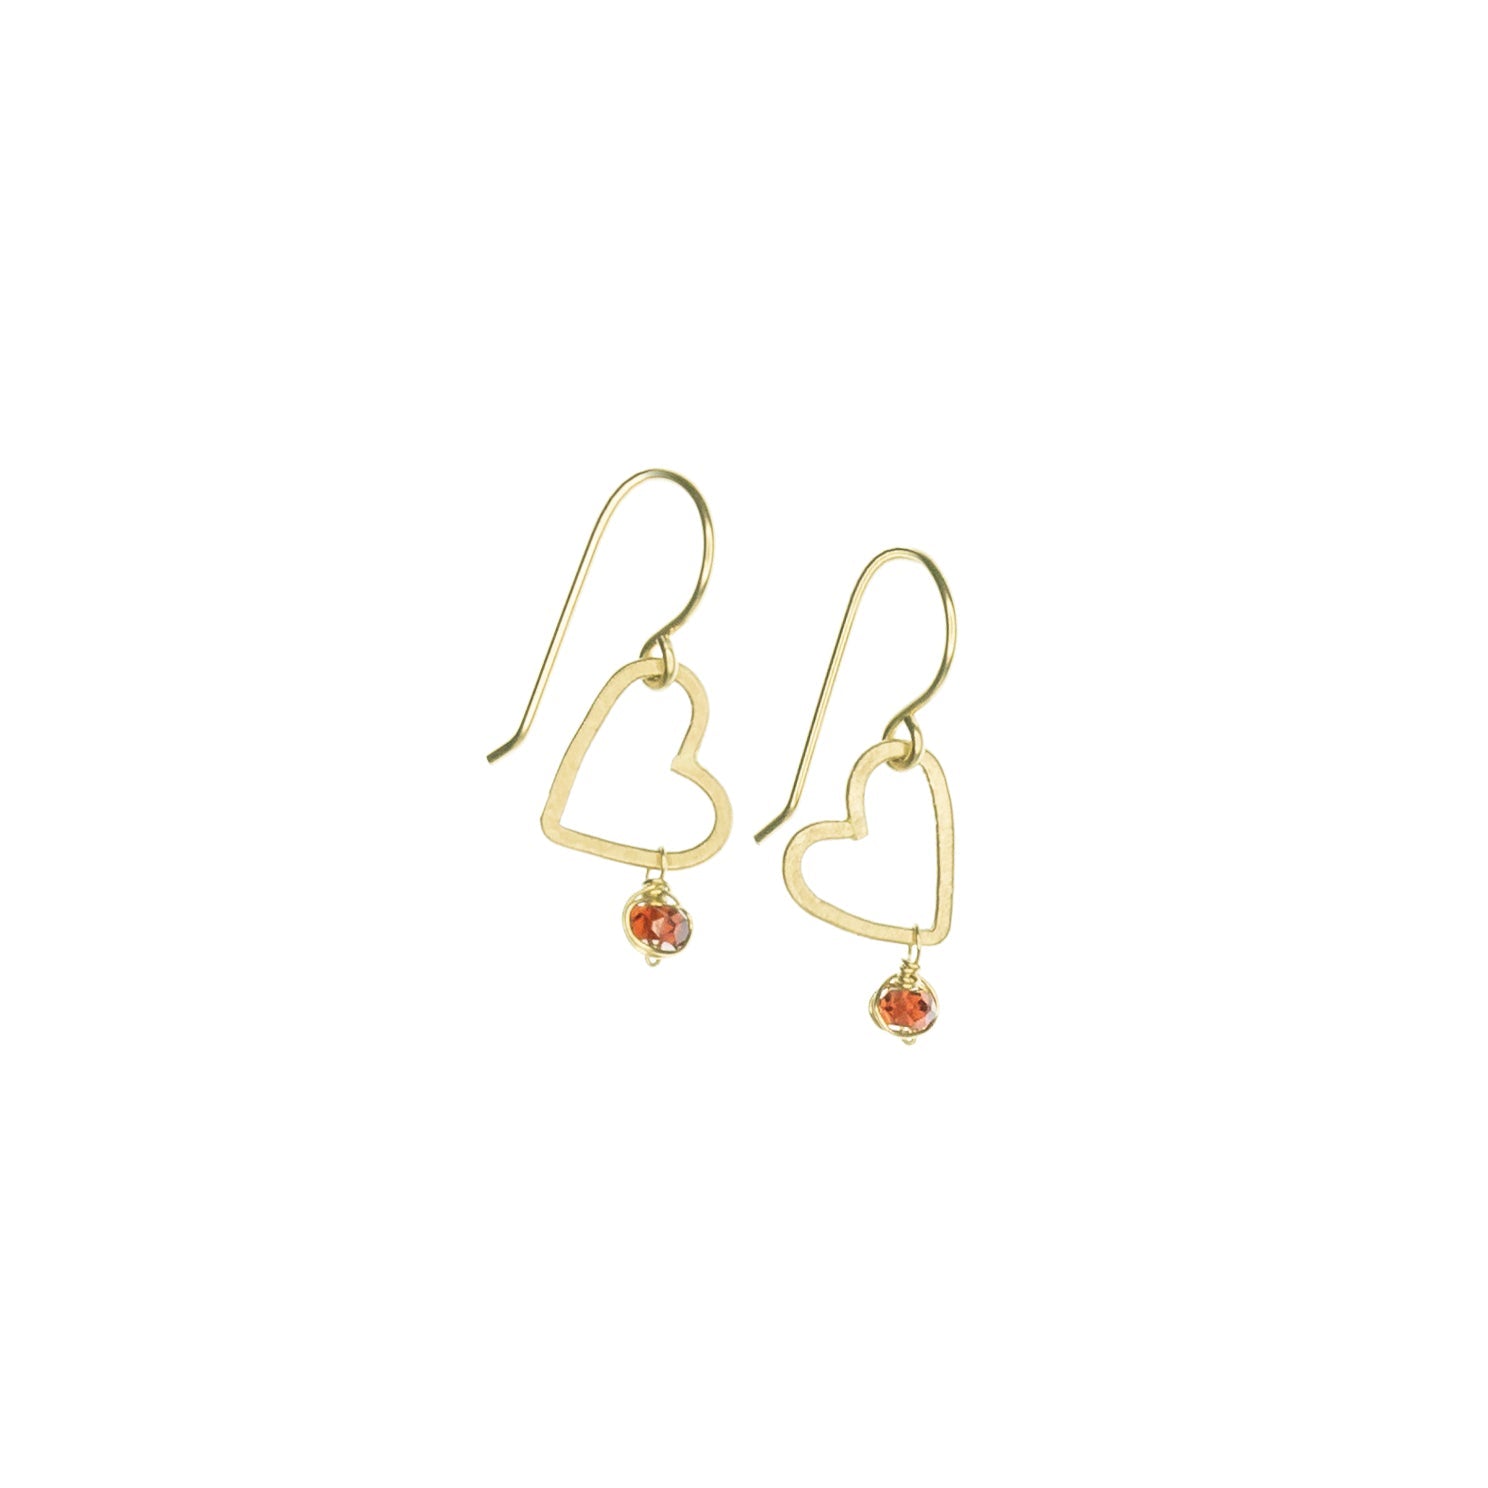 handmade gold heart garnet earrings laura j designs